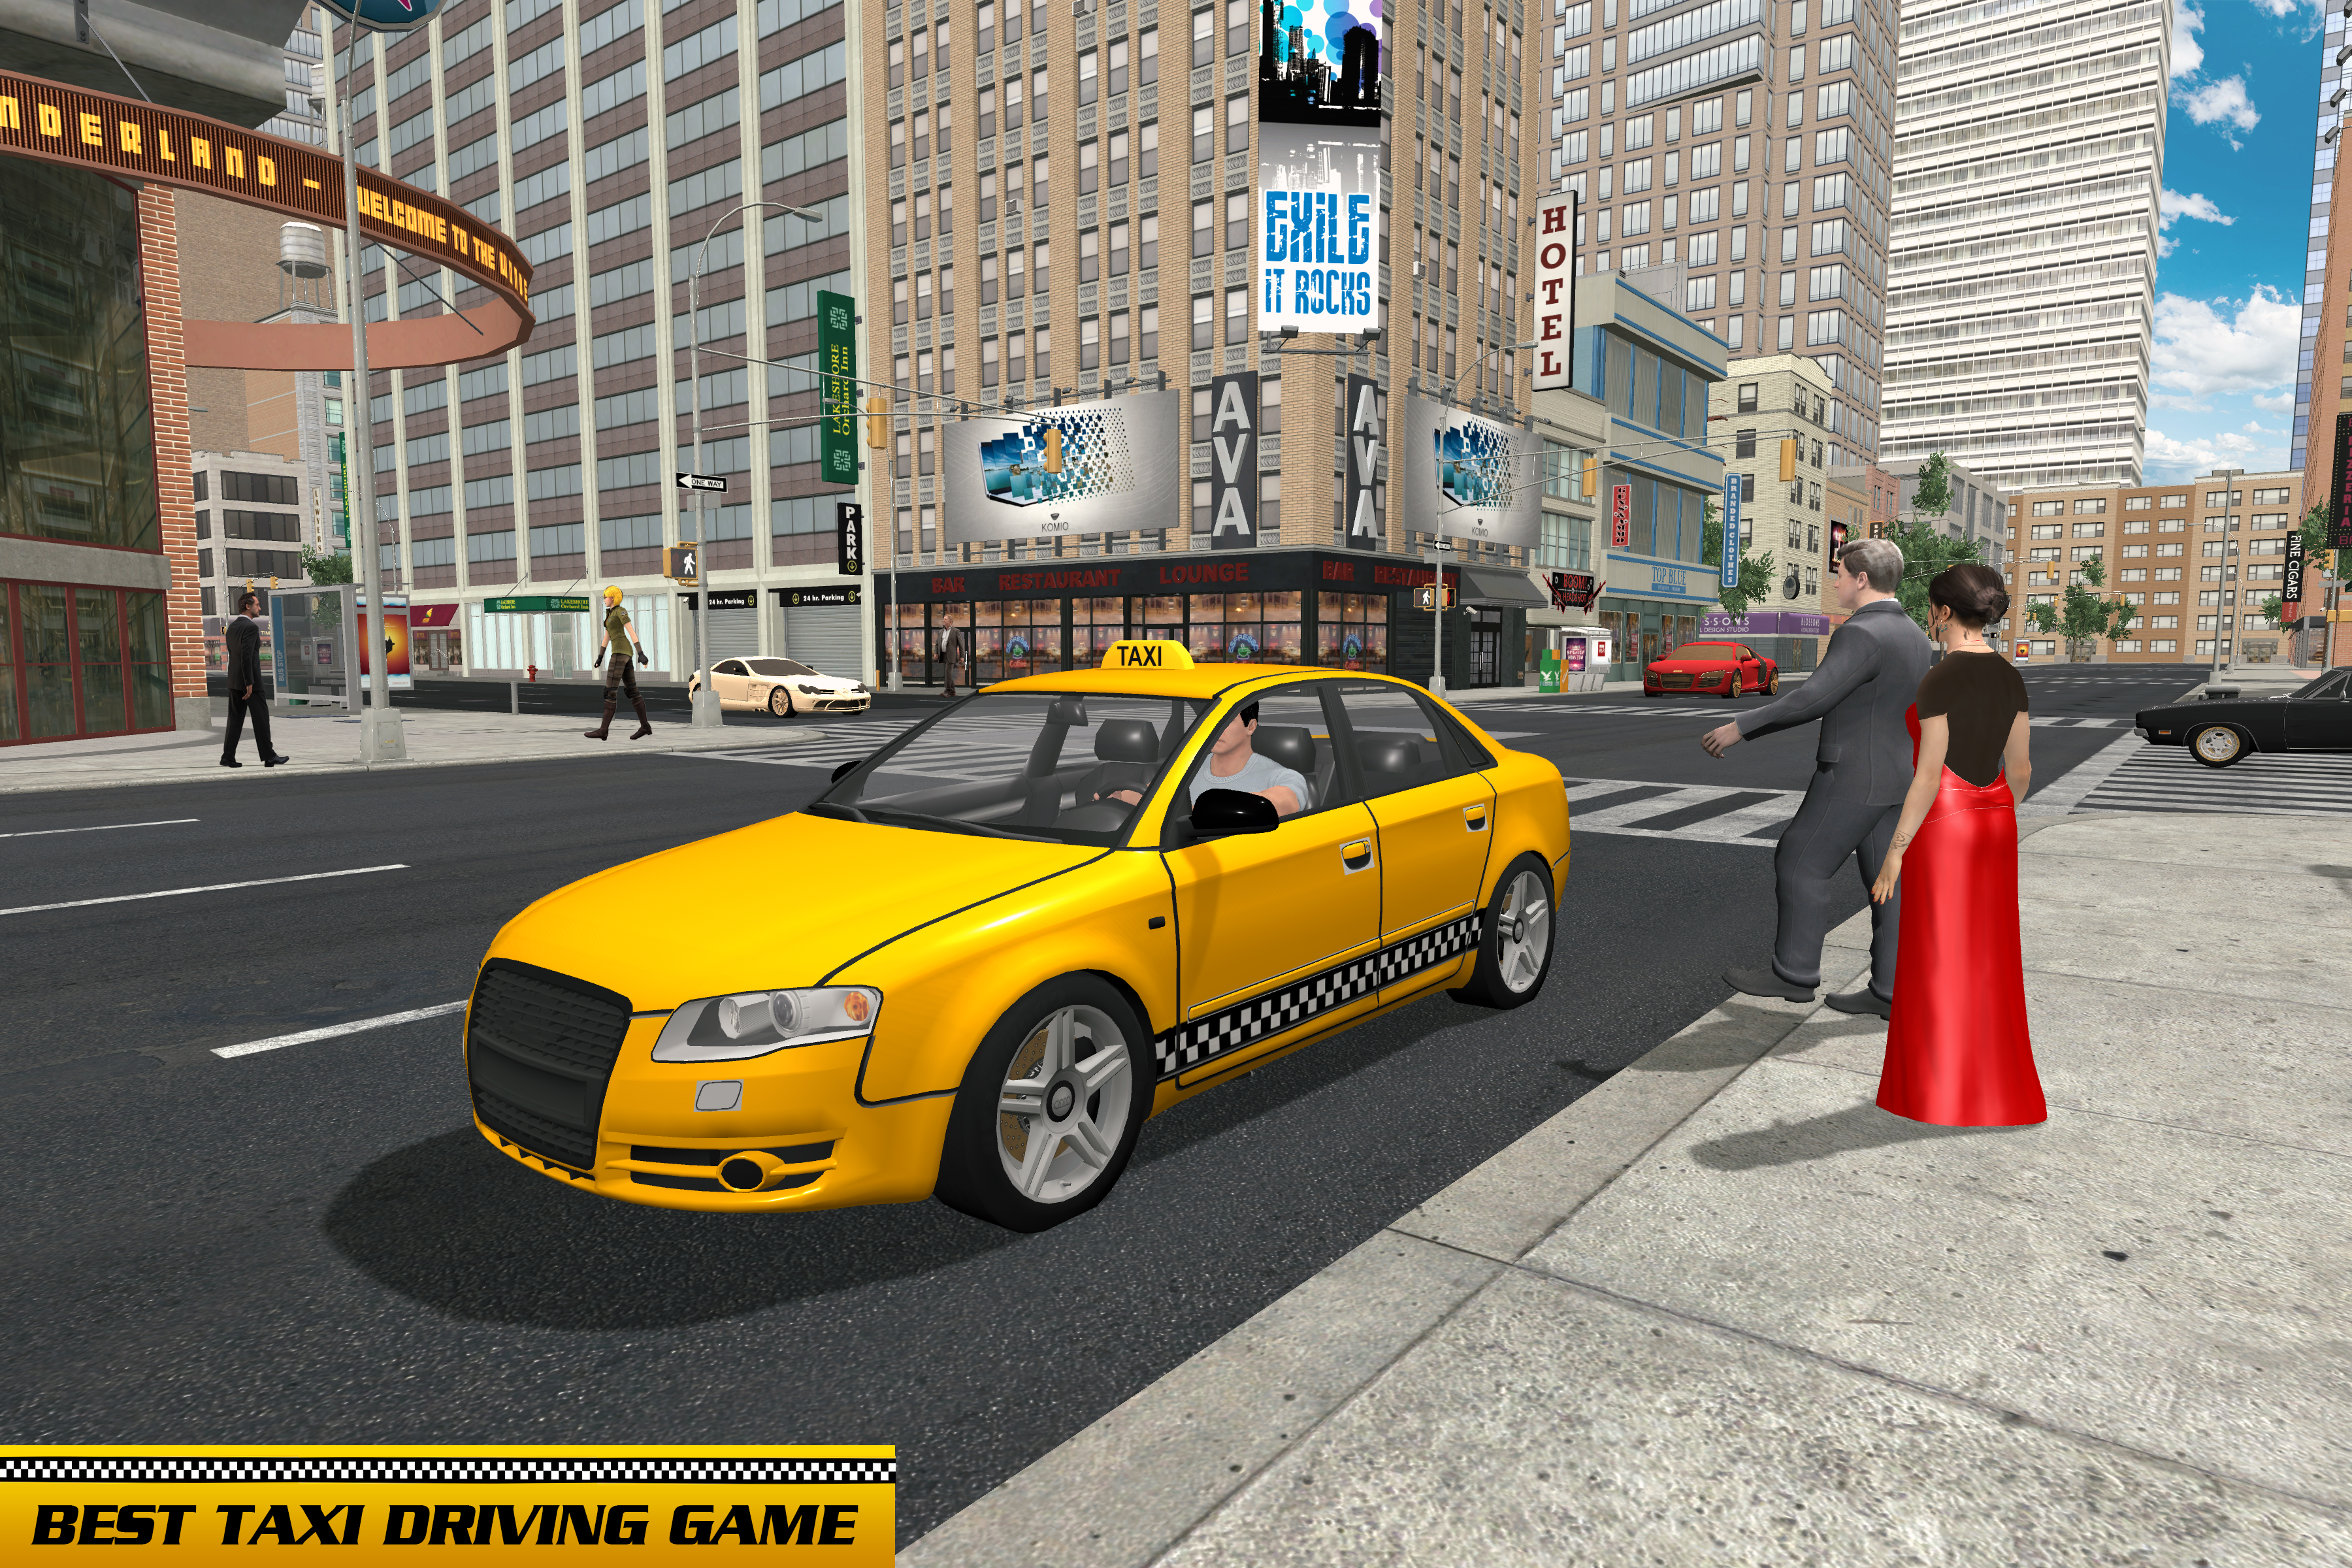 Screenshot 1 of Taxi Driver Car Games: Taxi Games 2019 16